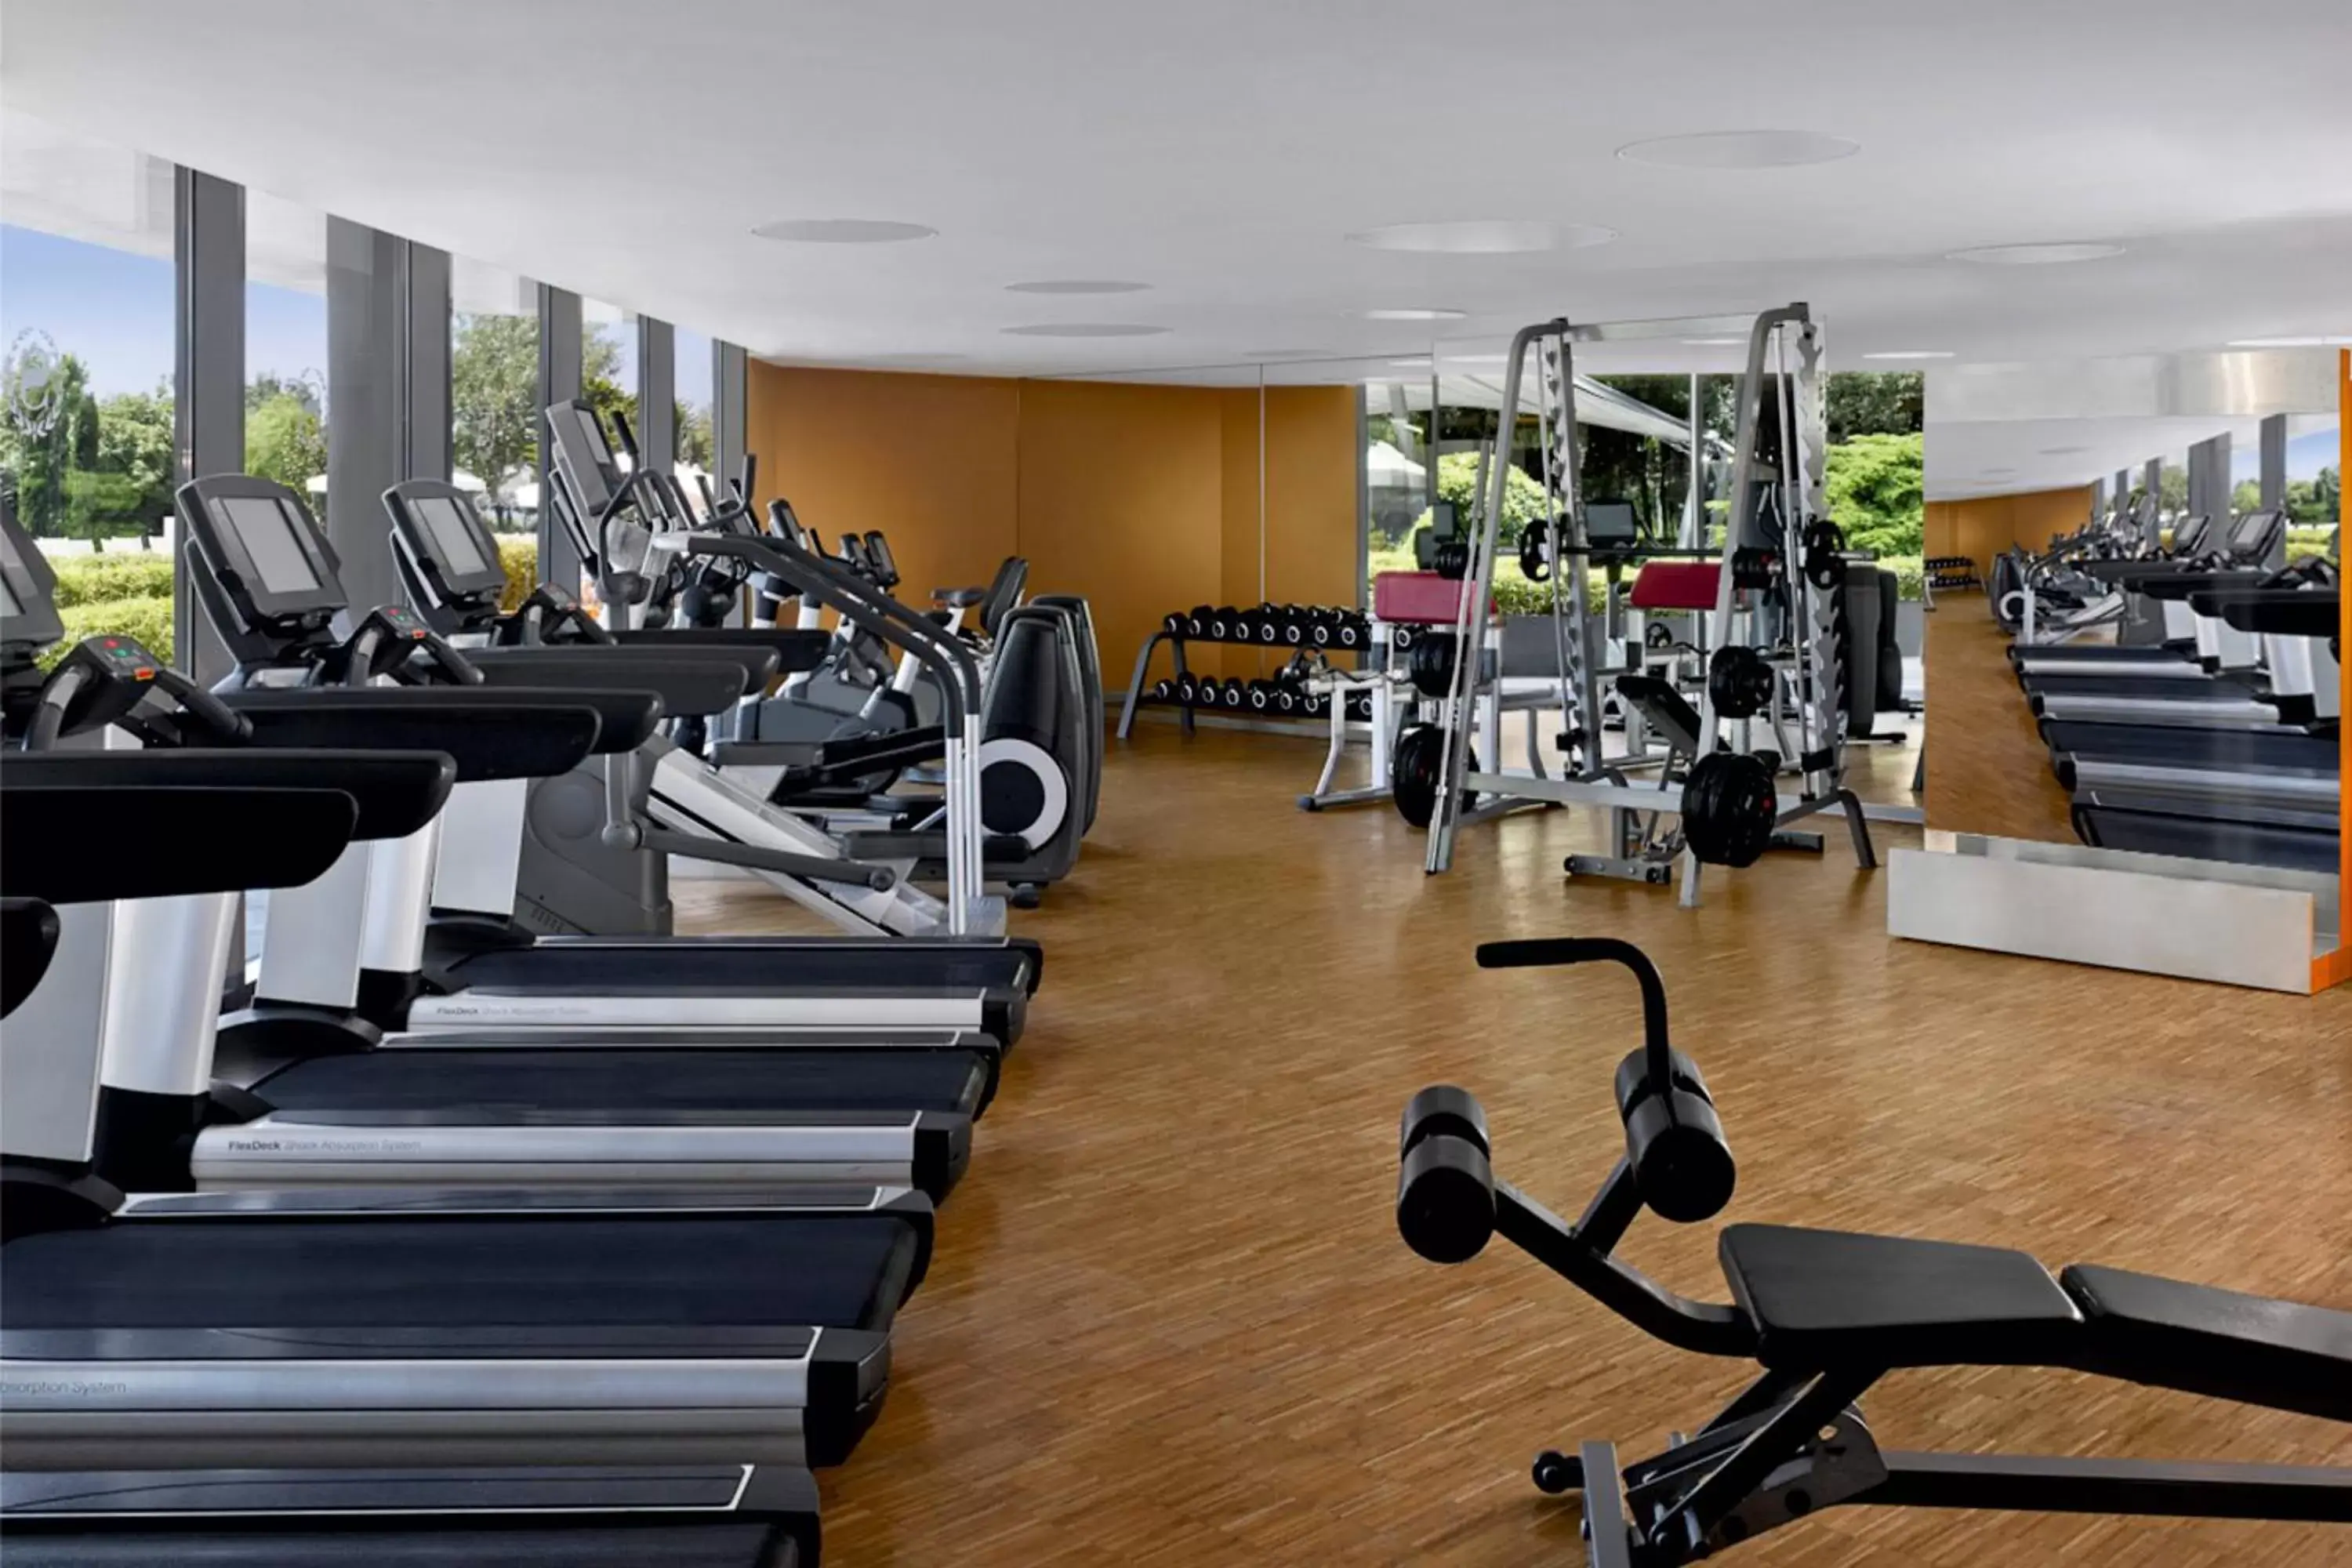 Fitness centre/facilities, Fitness Center/Facilities in Sheraton Istanbul Atakoy Hotel